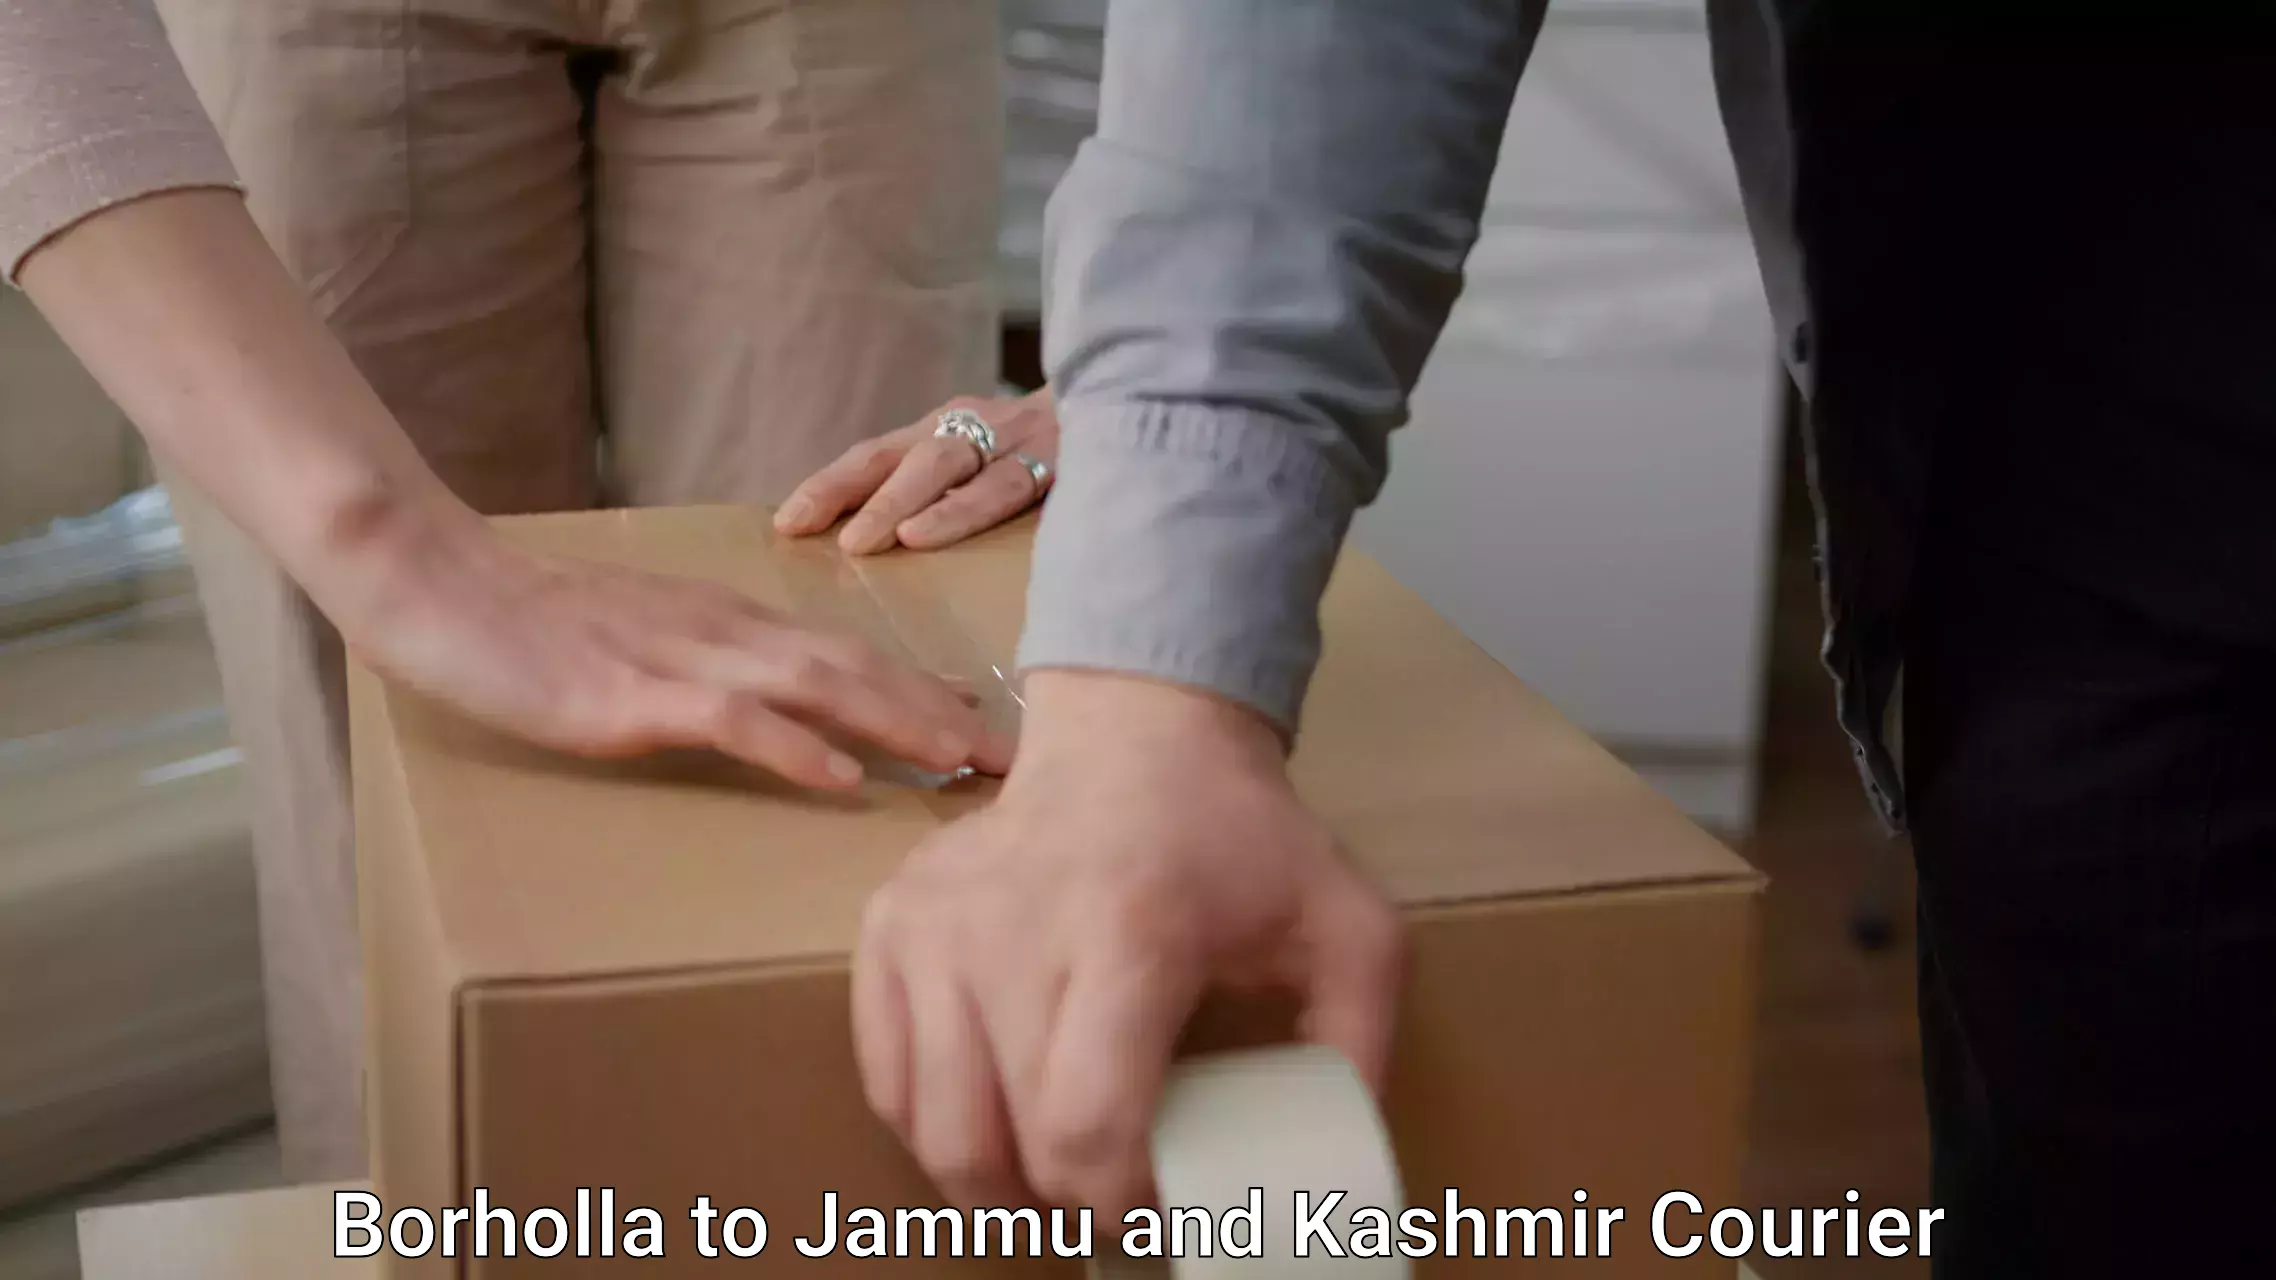 Furniture transport service Borholla to Jammu and Kashmir